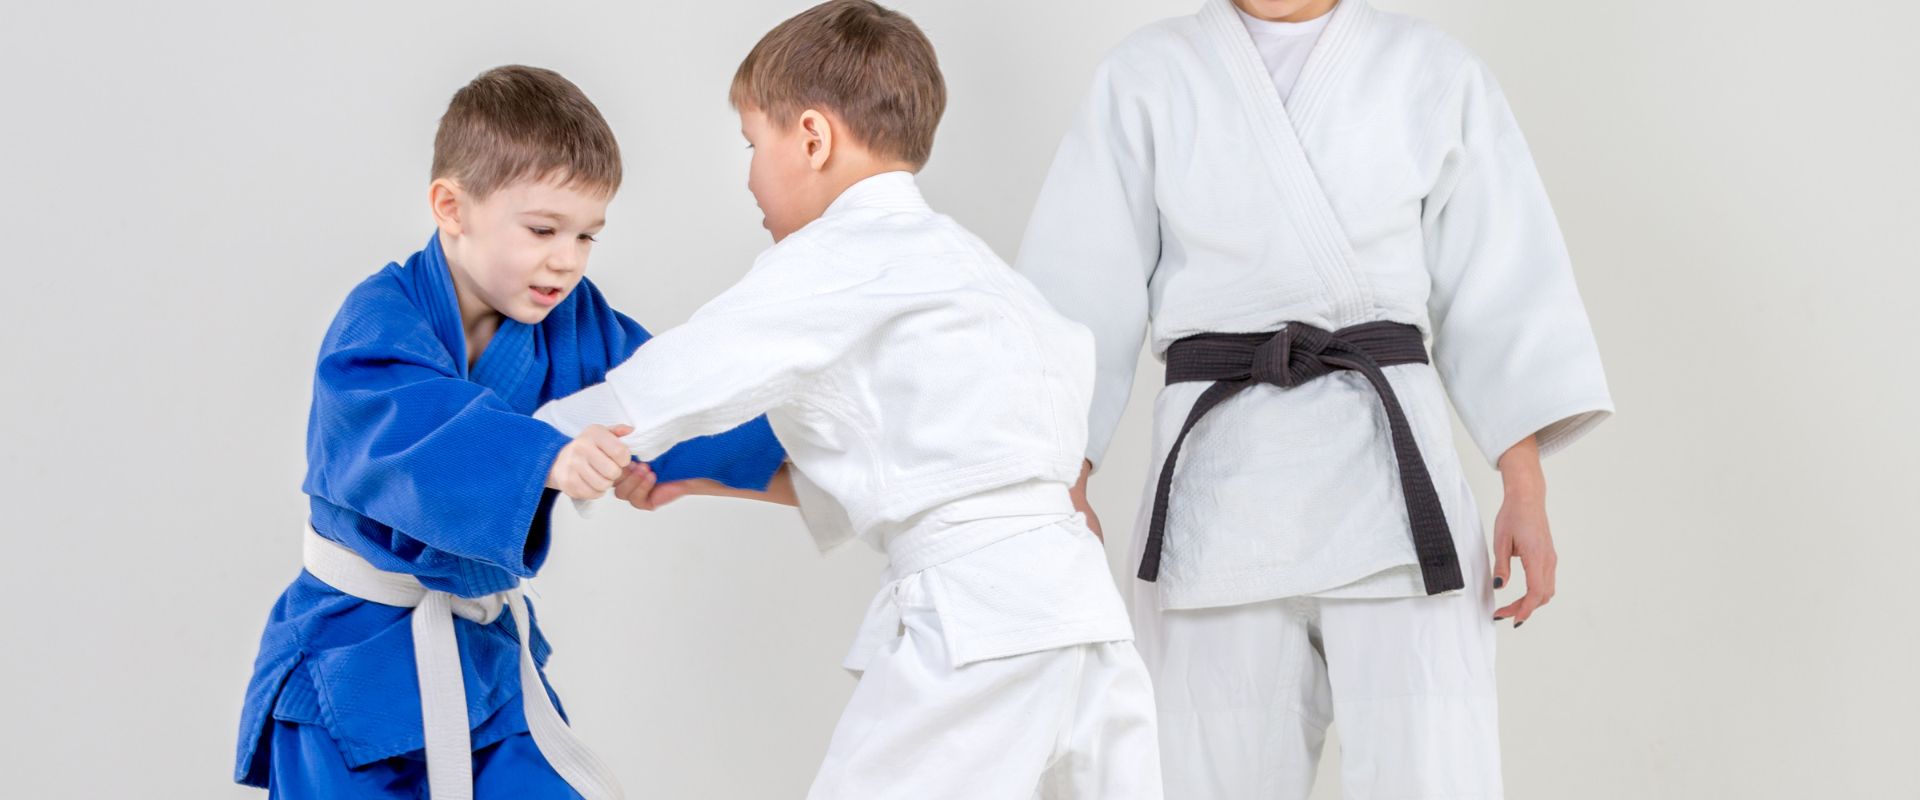 Mejores deportes para niños judo